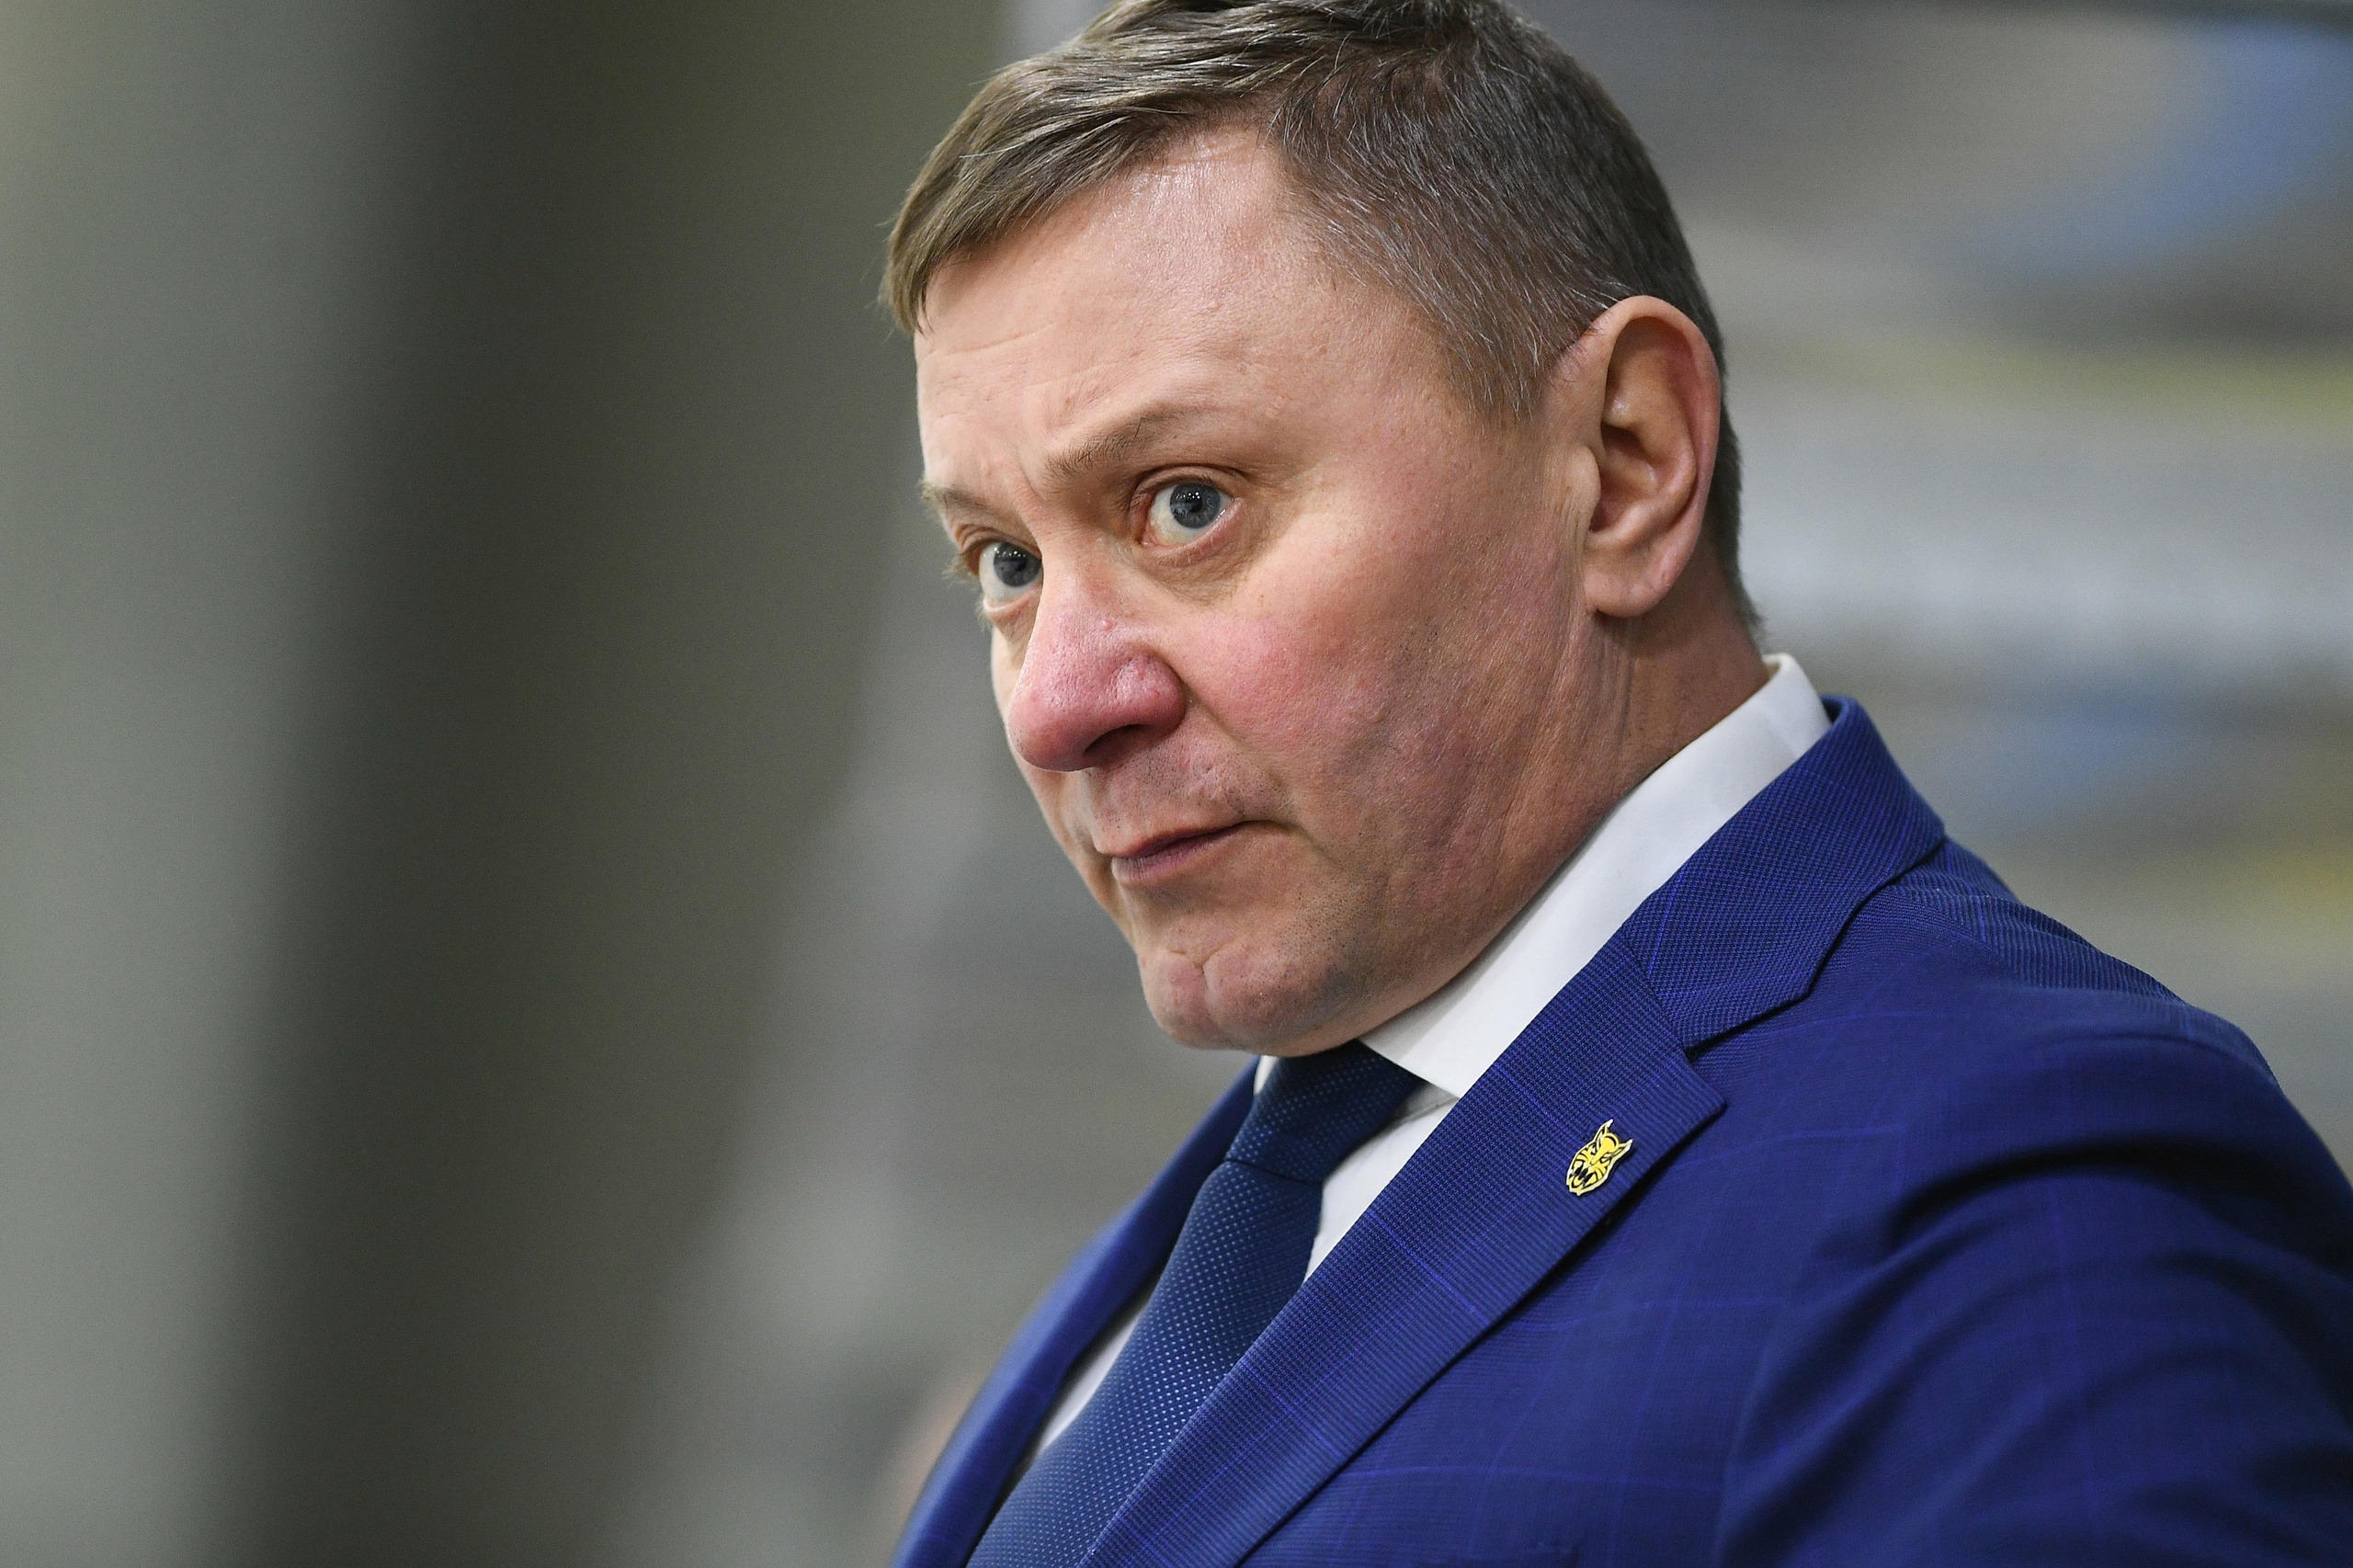 Андрей Николаевич Хабаров, главный тренер МХК "Металлург", подвёл итоги сезона 2022/23